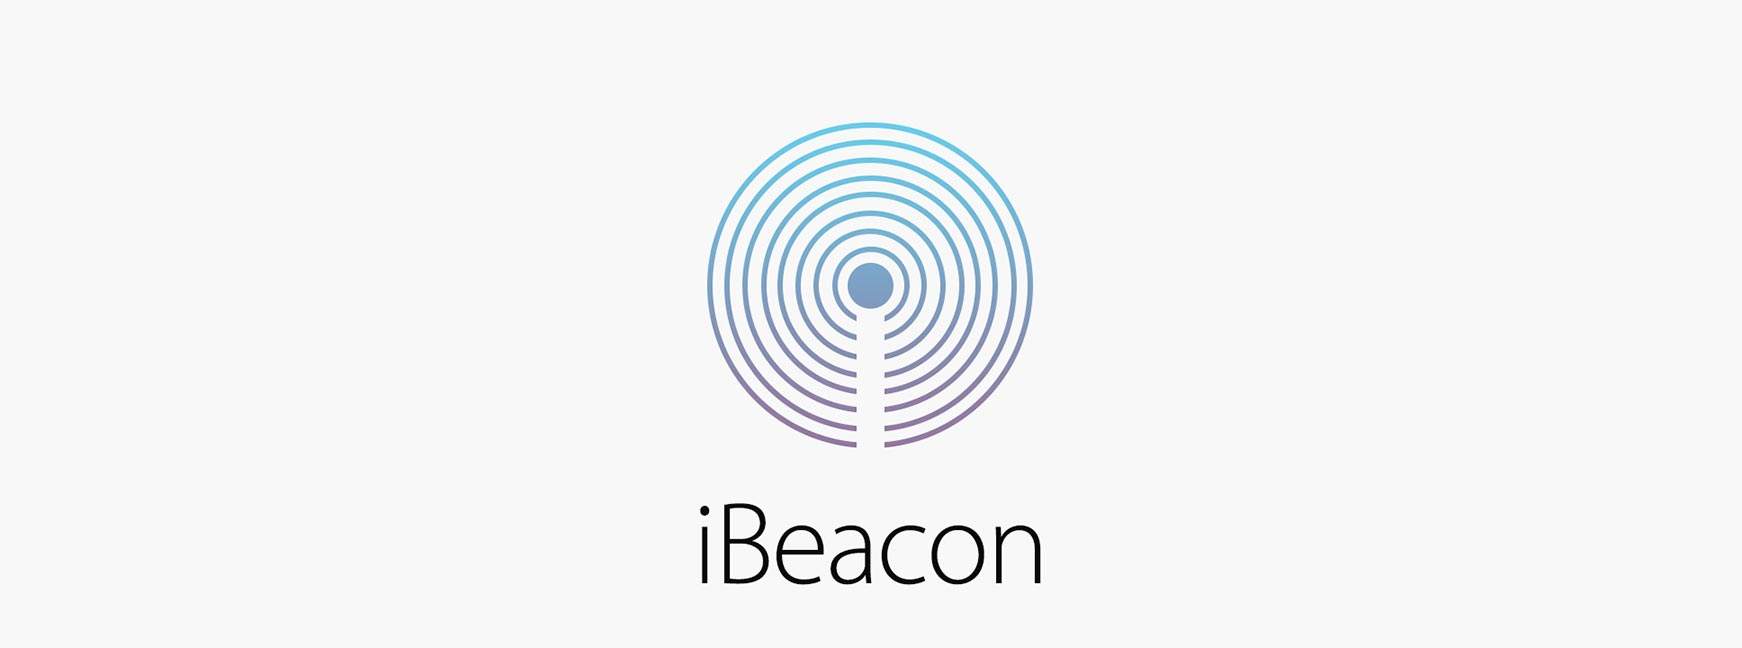 La batalla de las balizas: Eddystone contra iBeacon